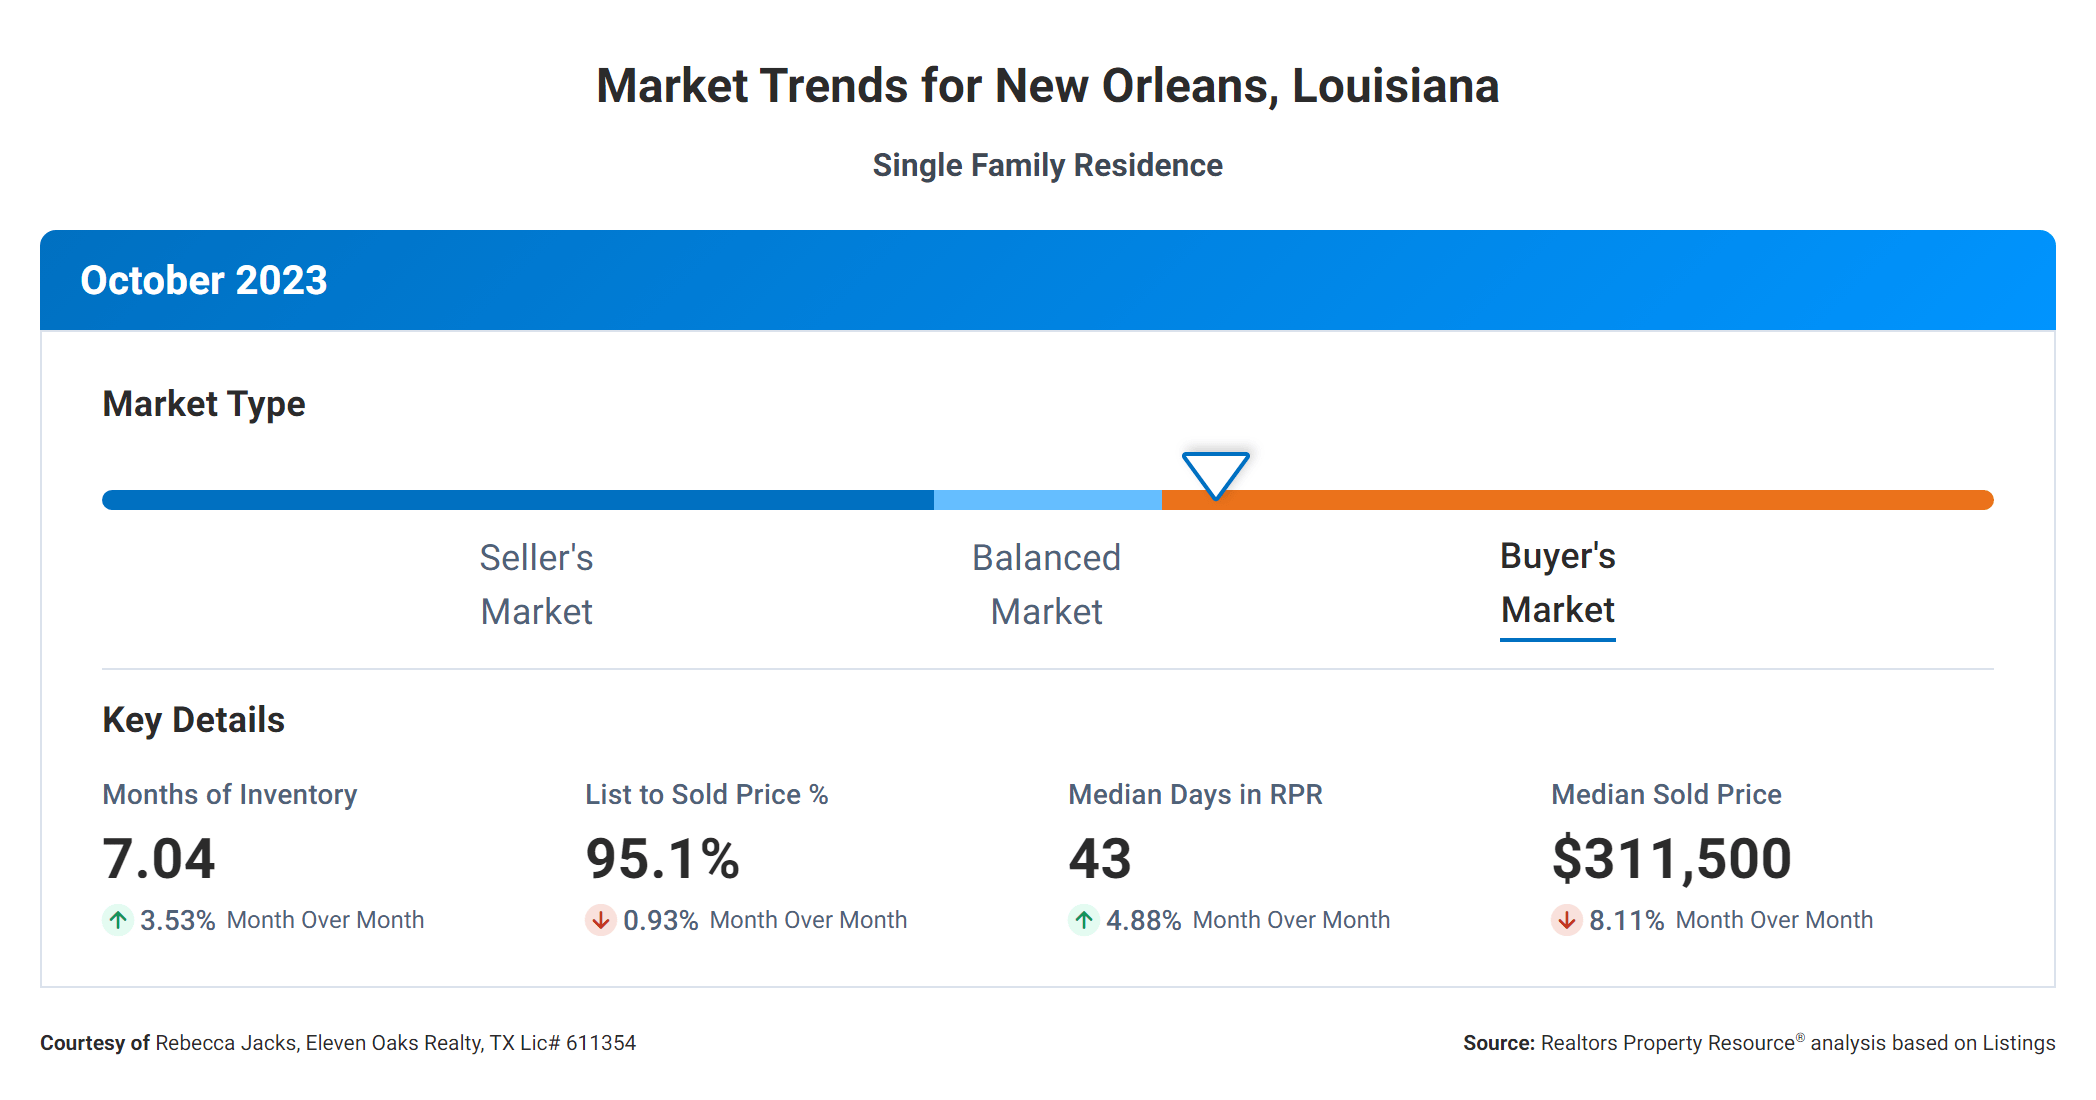 October 2023 market trends for New Orleans, LA